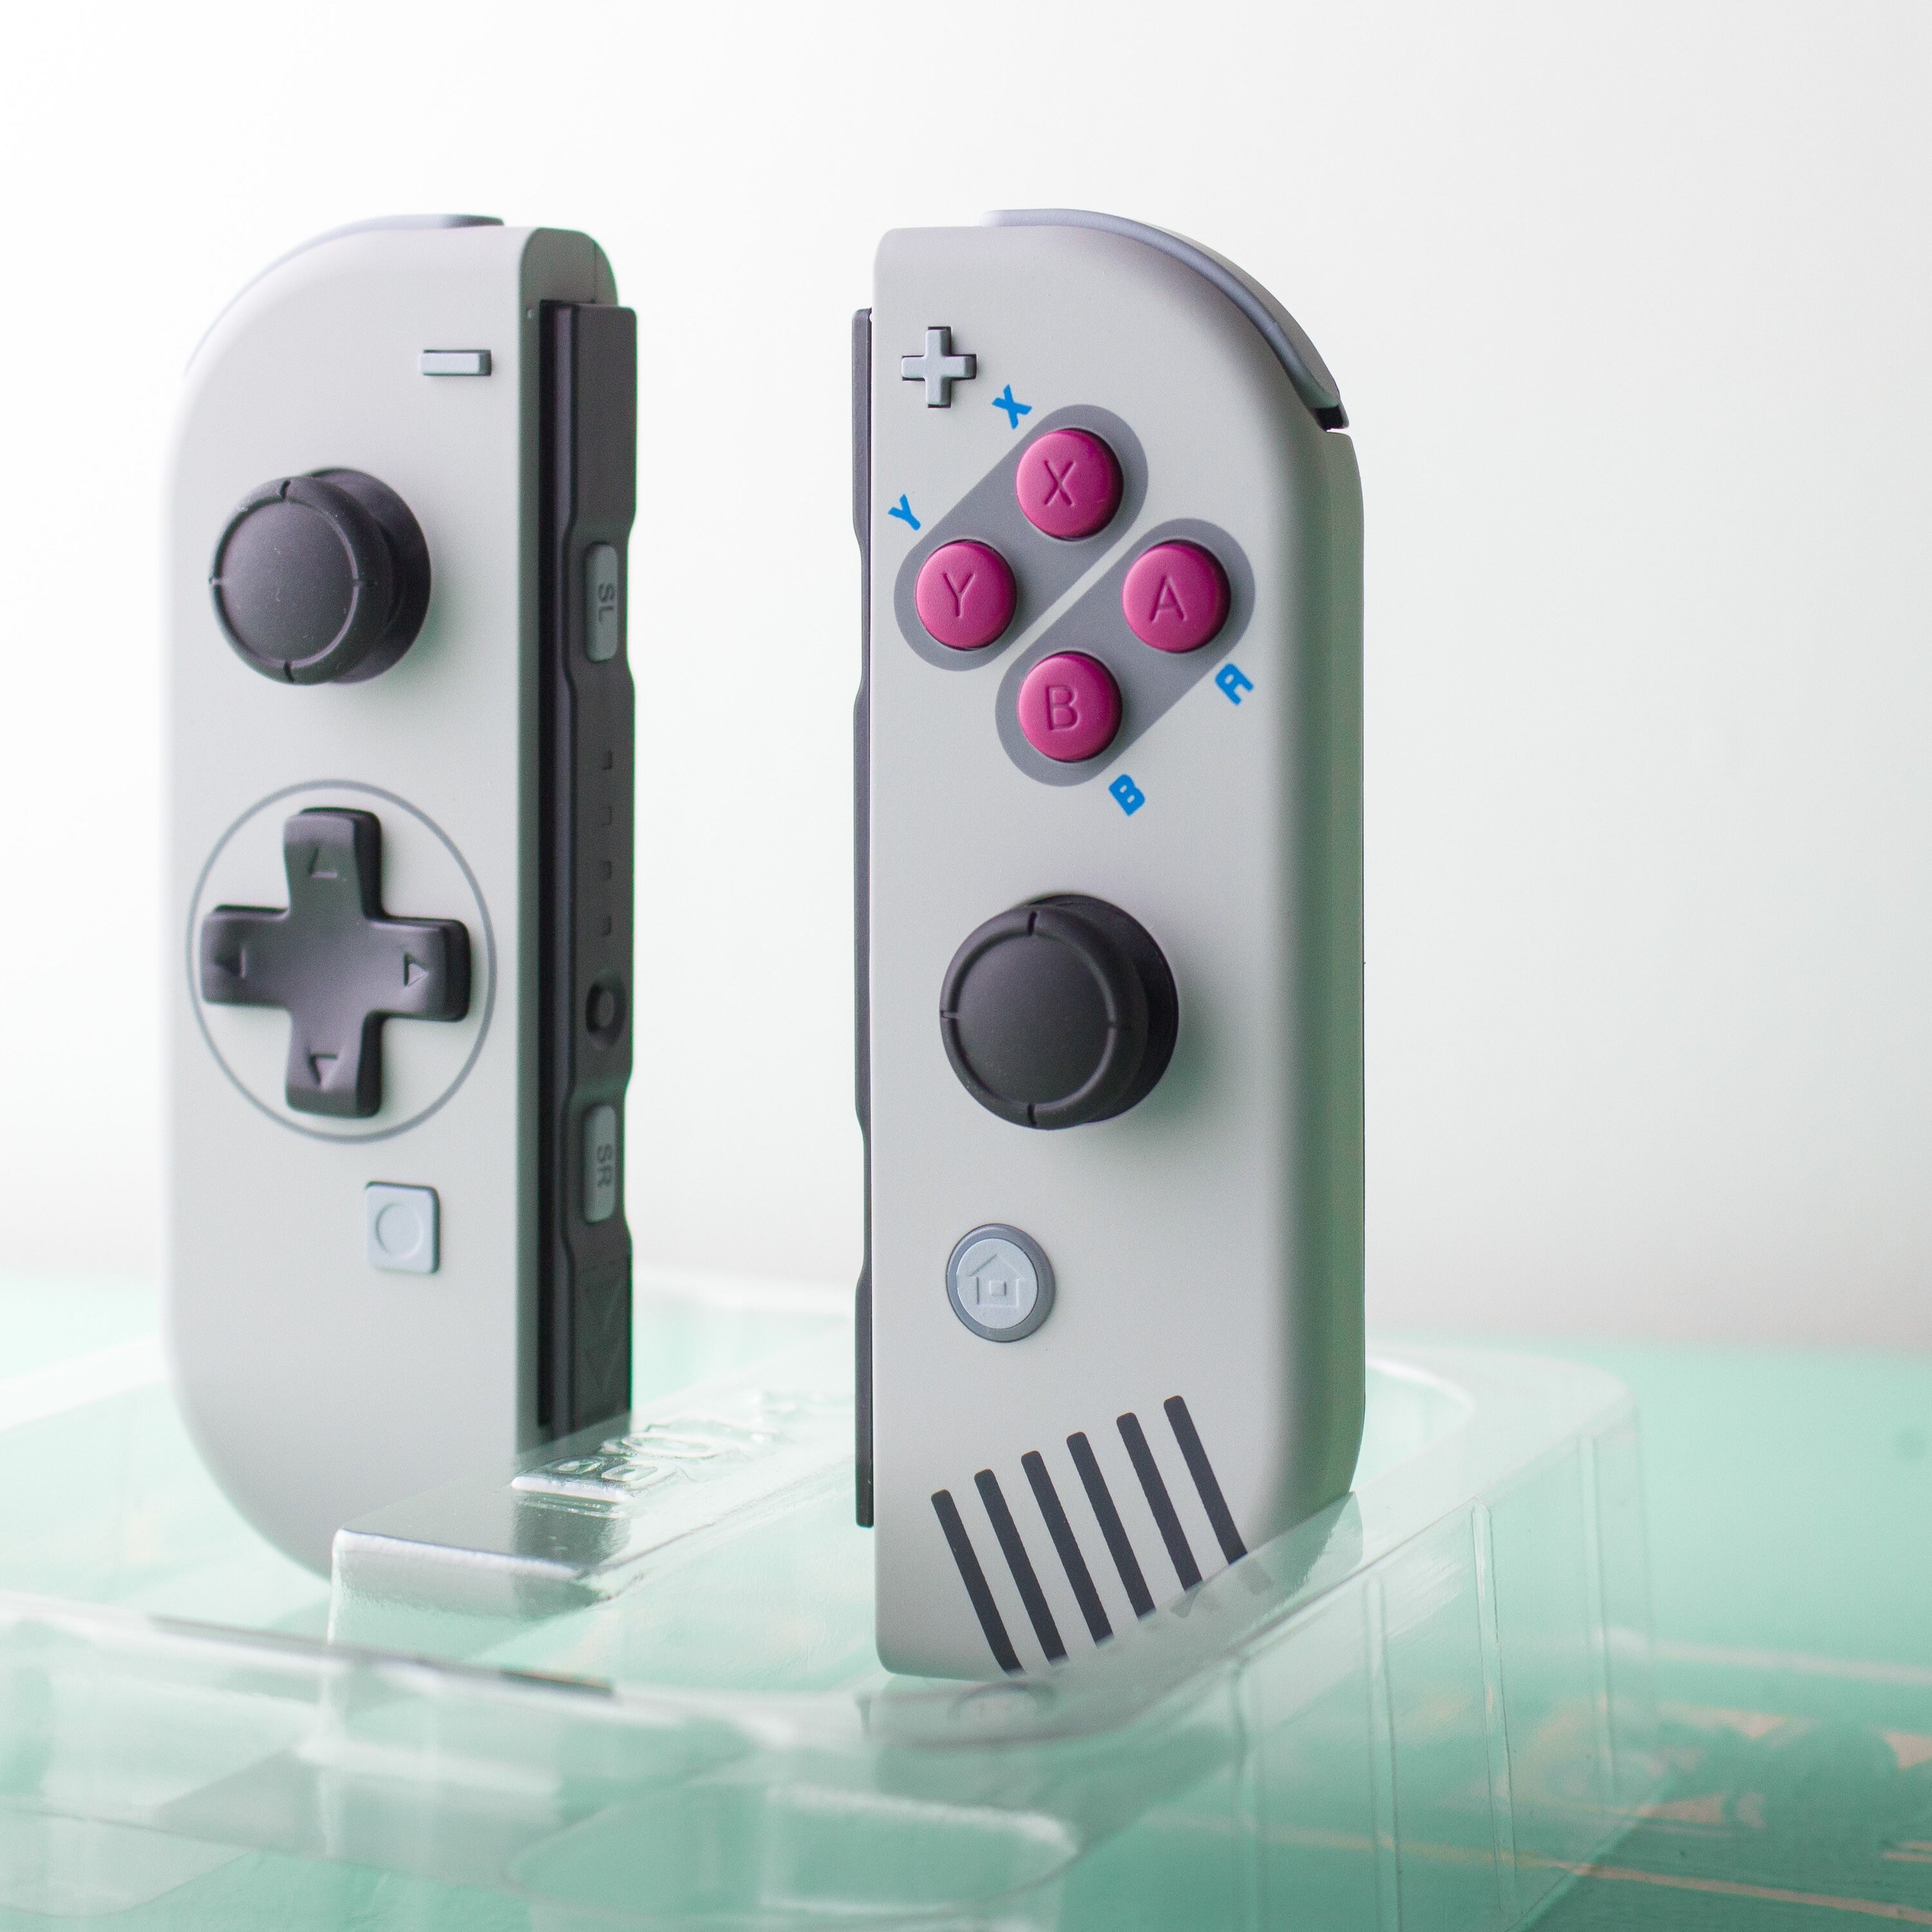 Fã cria carcaça inspirada no Game Boy clássico para Joy-Cons